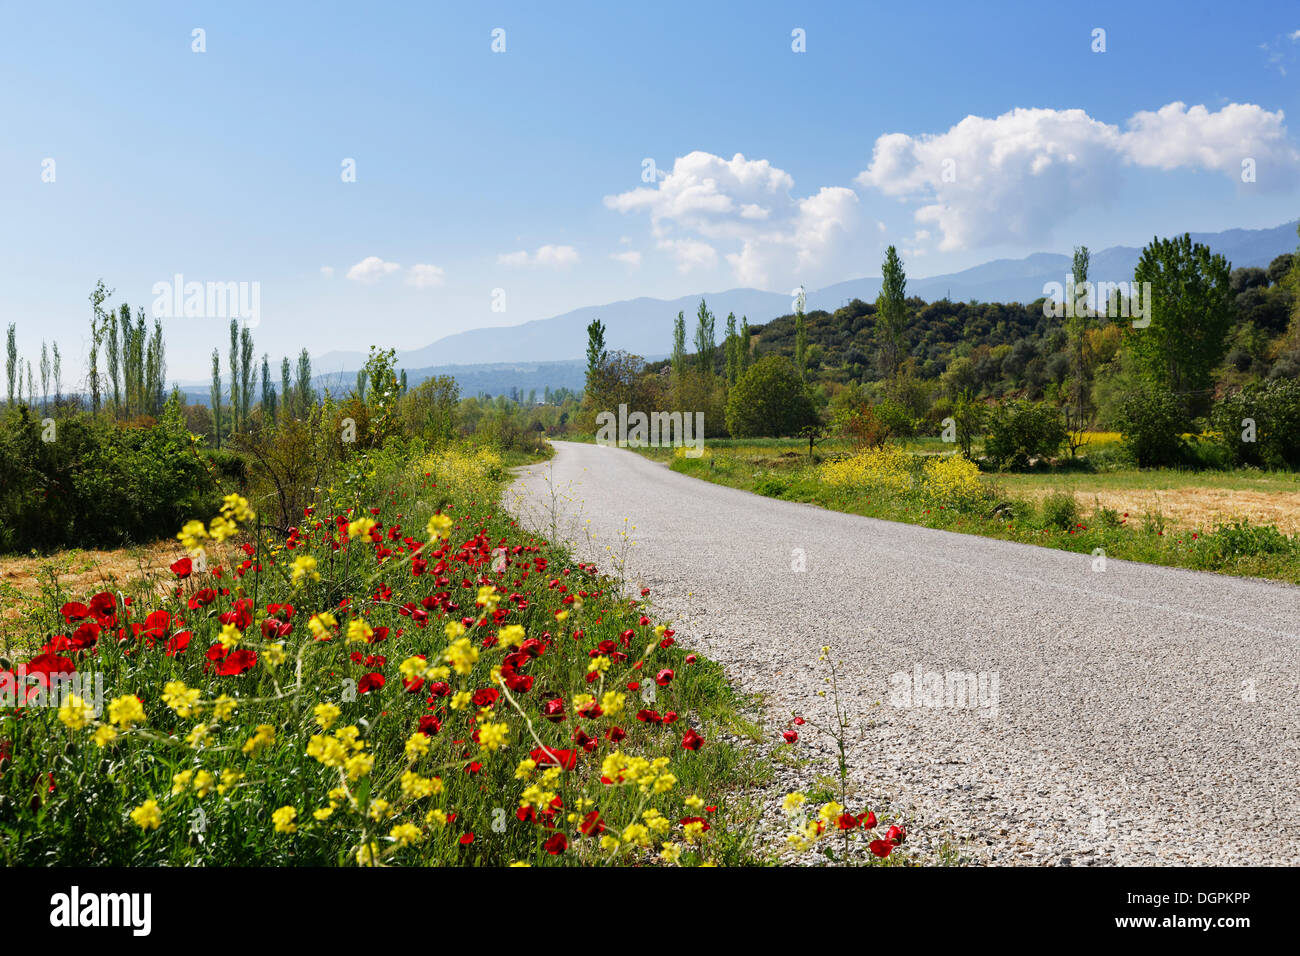 Flores silvestres creciendo al lado de una carretera rural, Yenice, provincia de Aydin, región del Egeo, Turquía Foto de stock